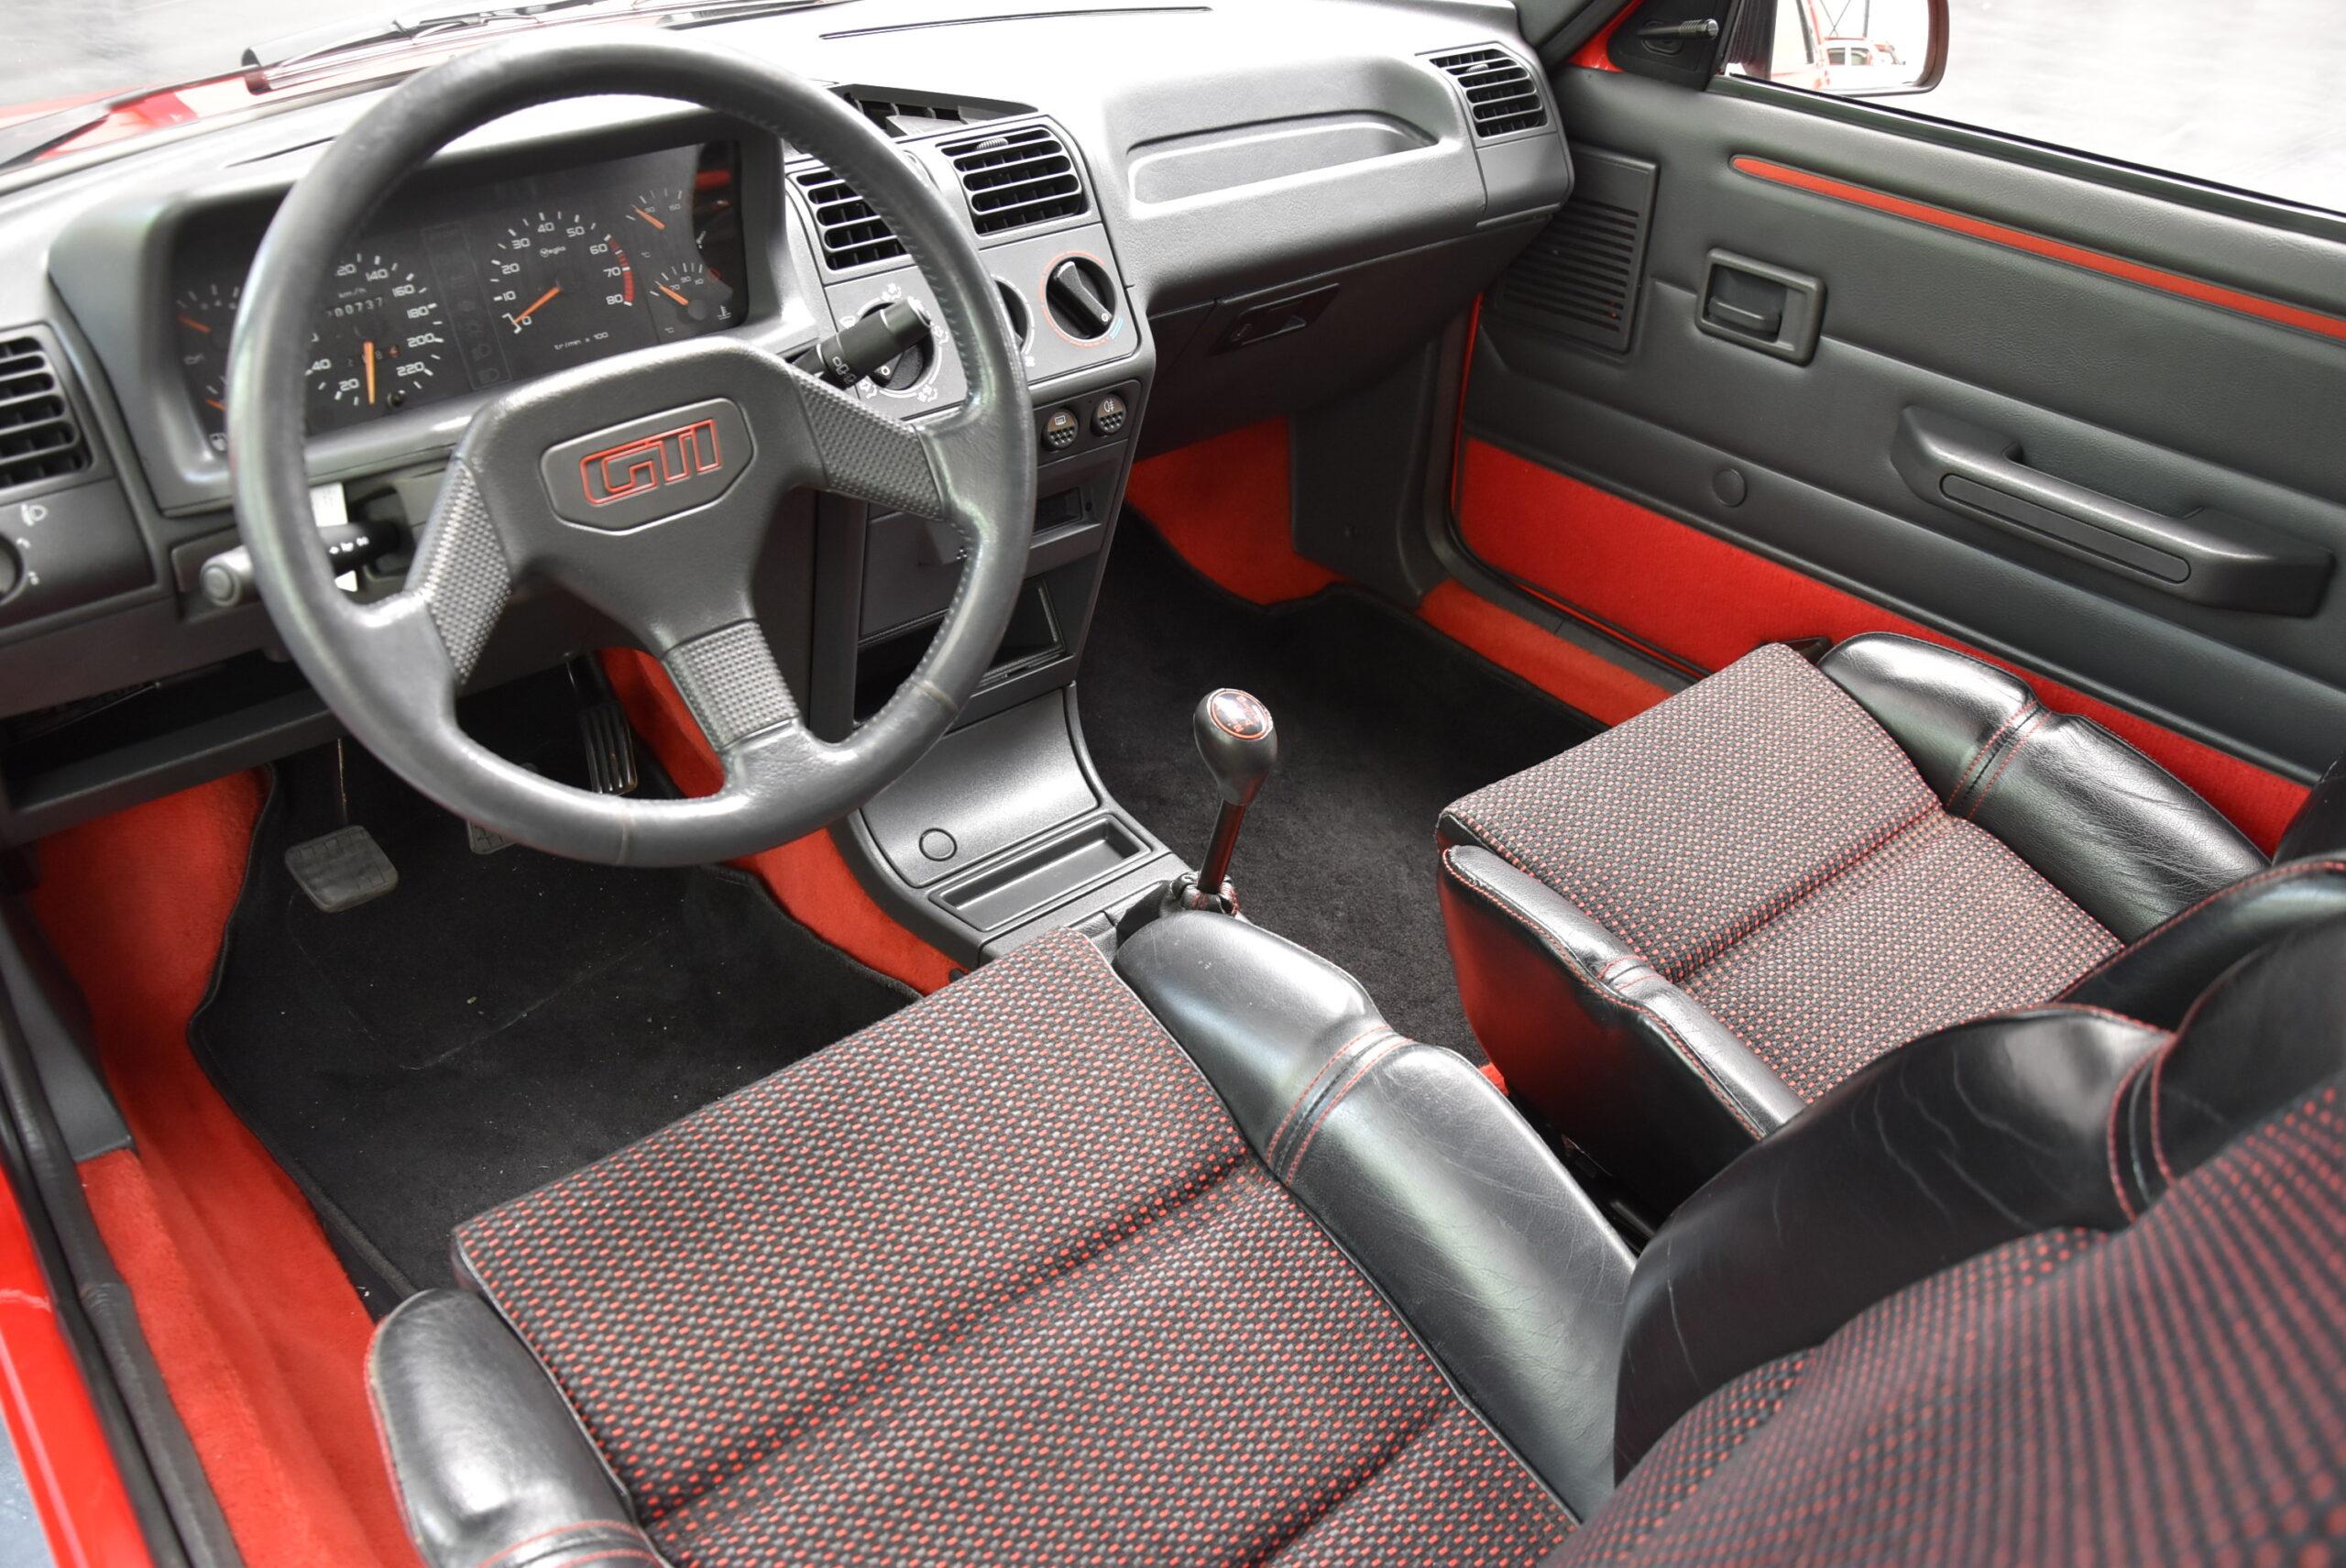 Peugeot-205-GTI-1.9-interieur-voorin-scaled.jpg